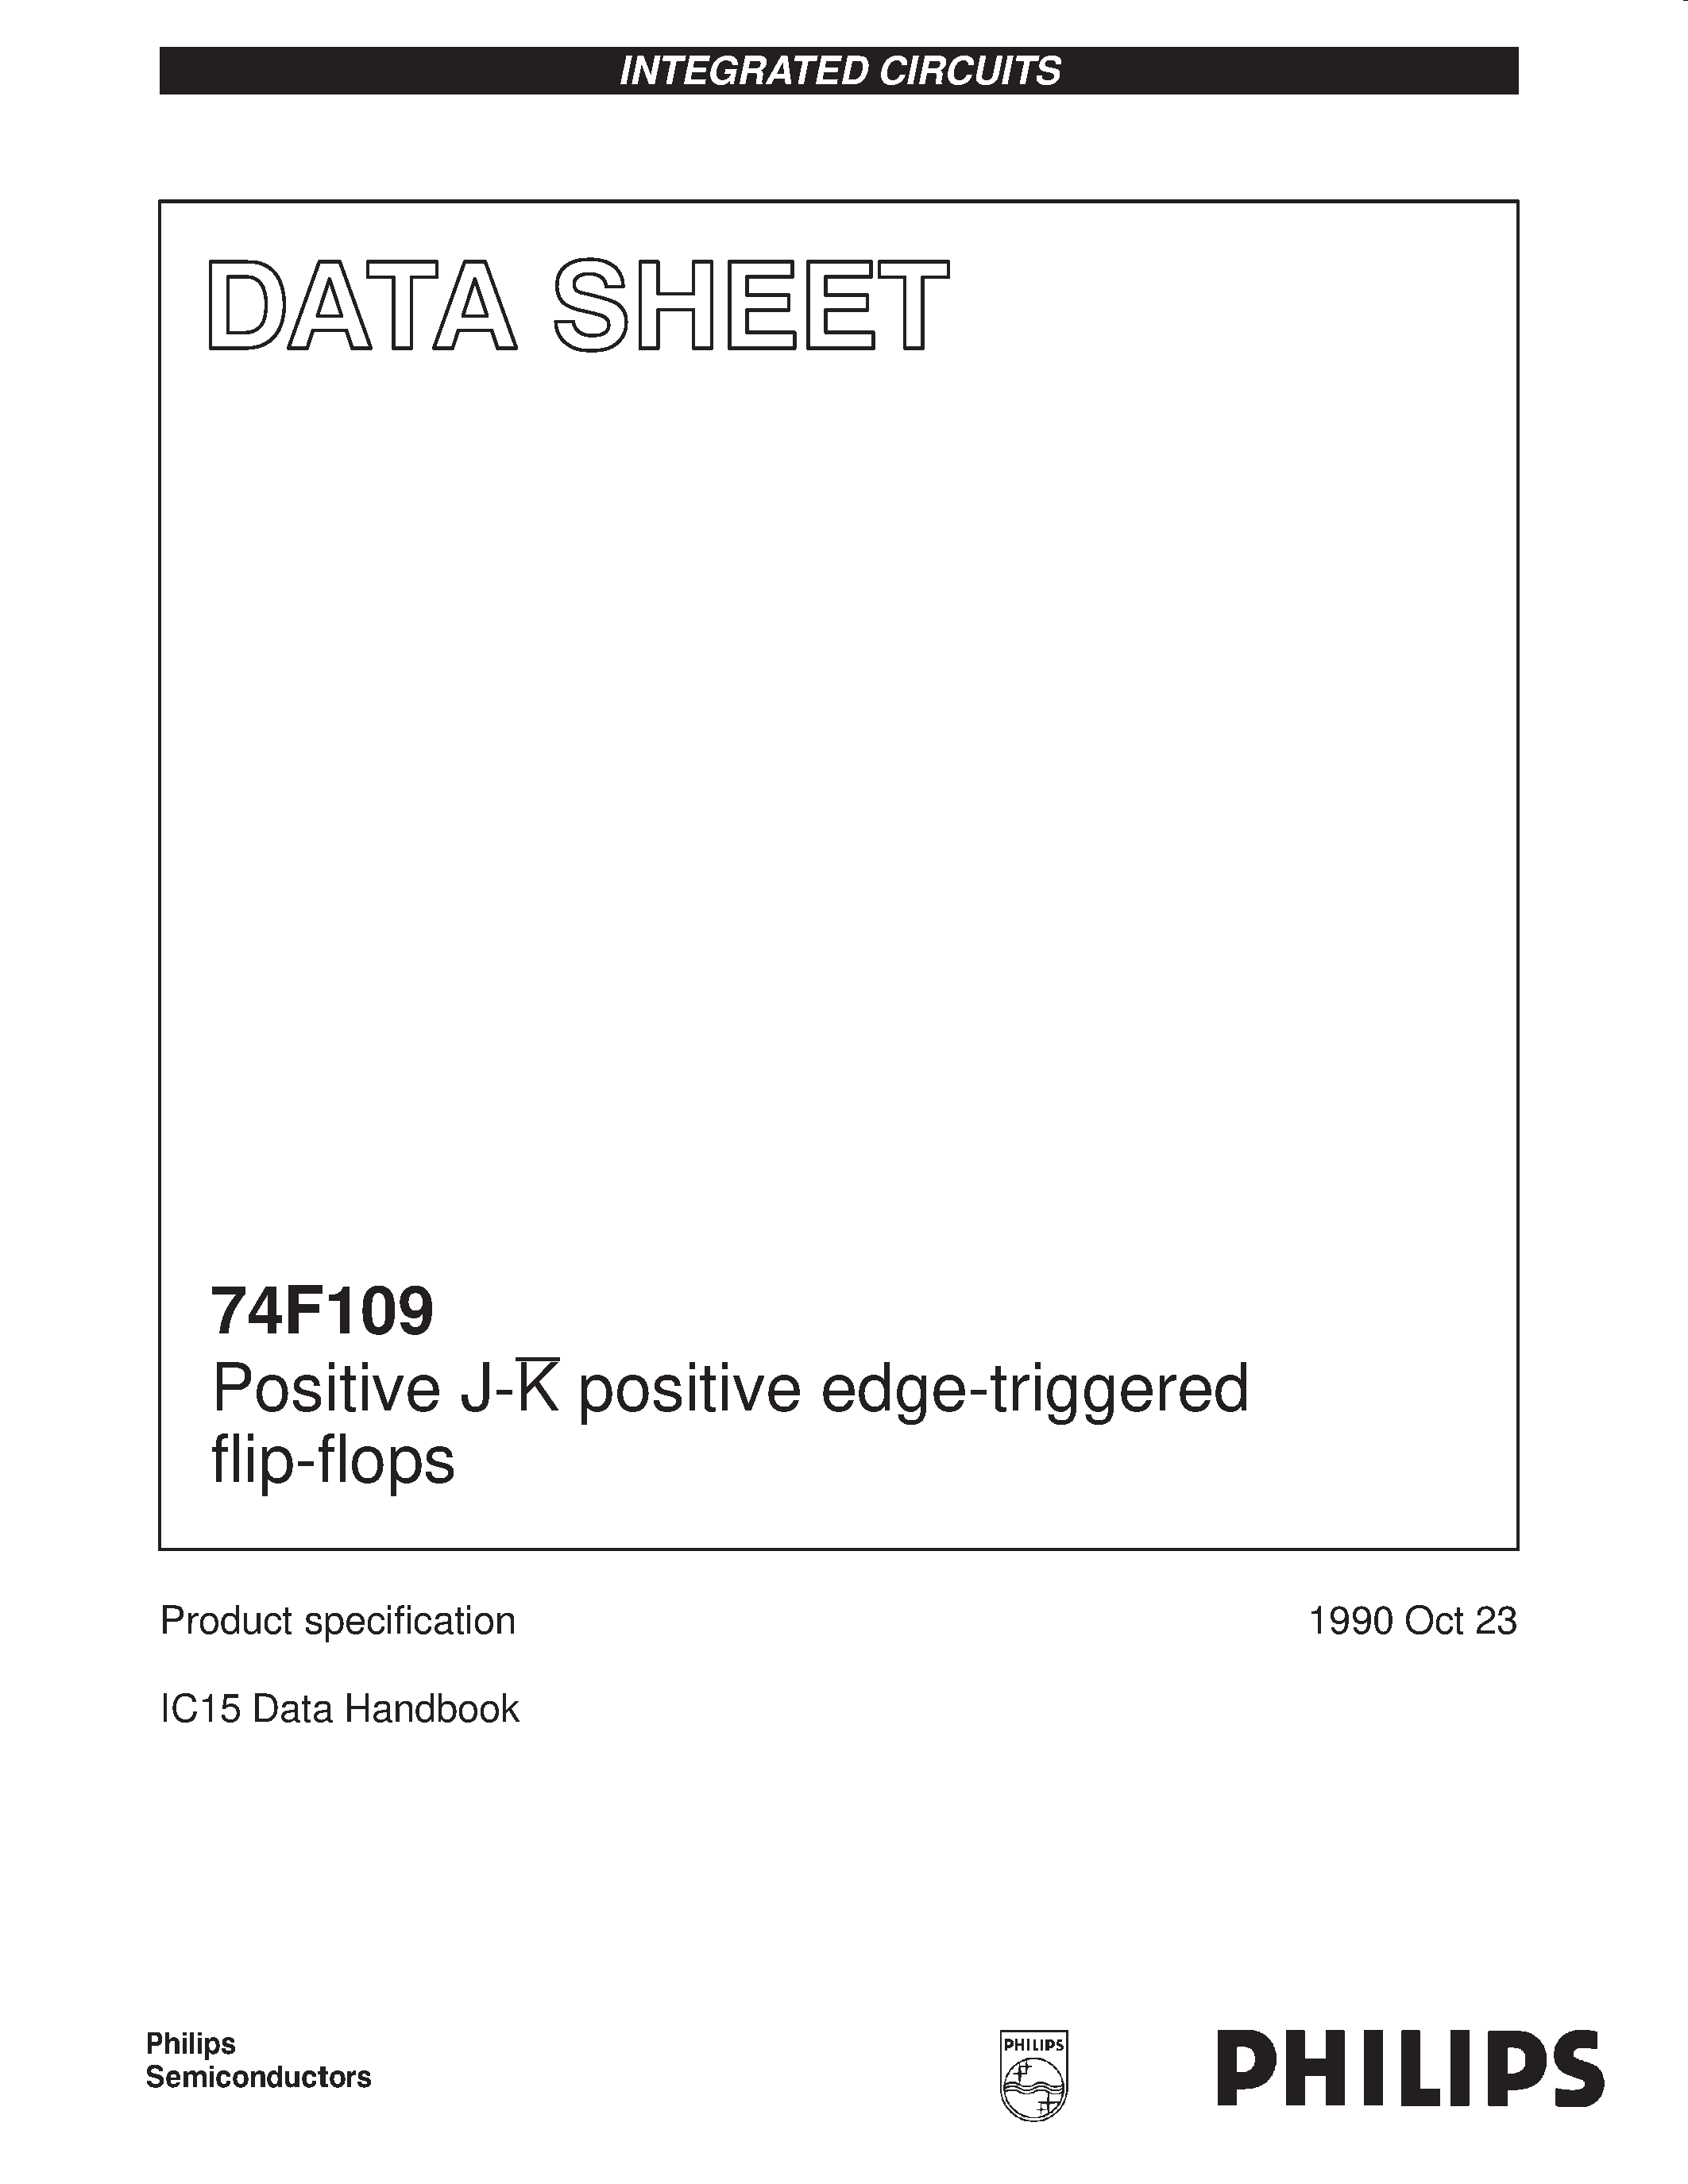 Datasheet 74F109 - Positive J-K positive edge-triggered flip-flops page 1